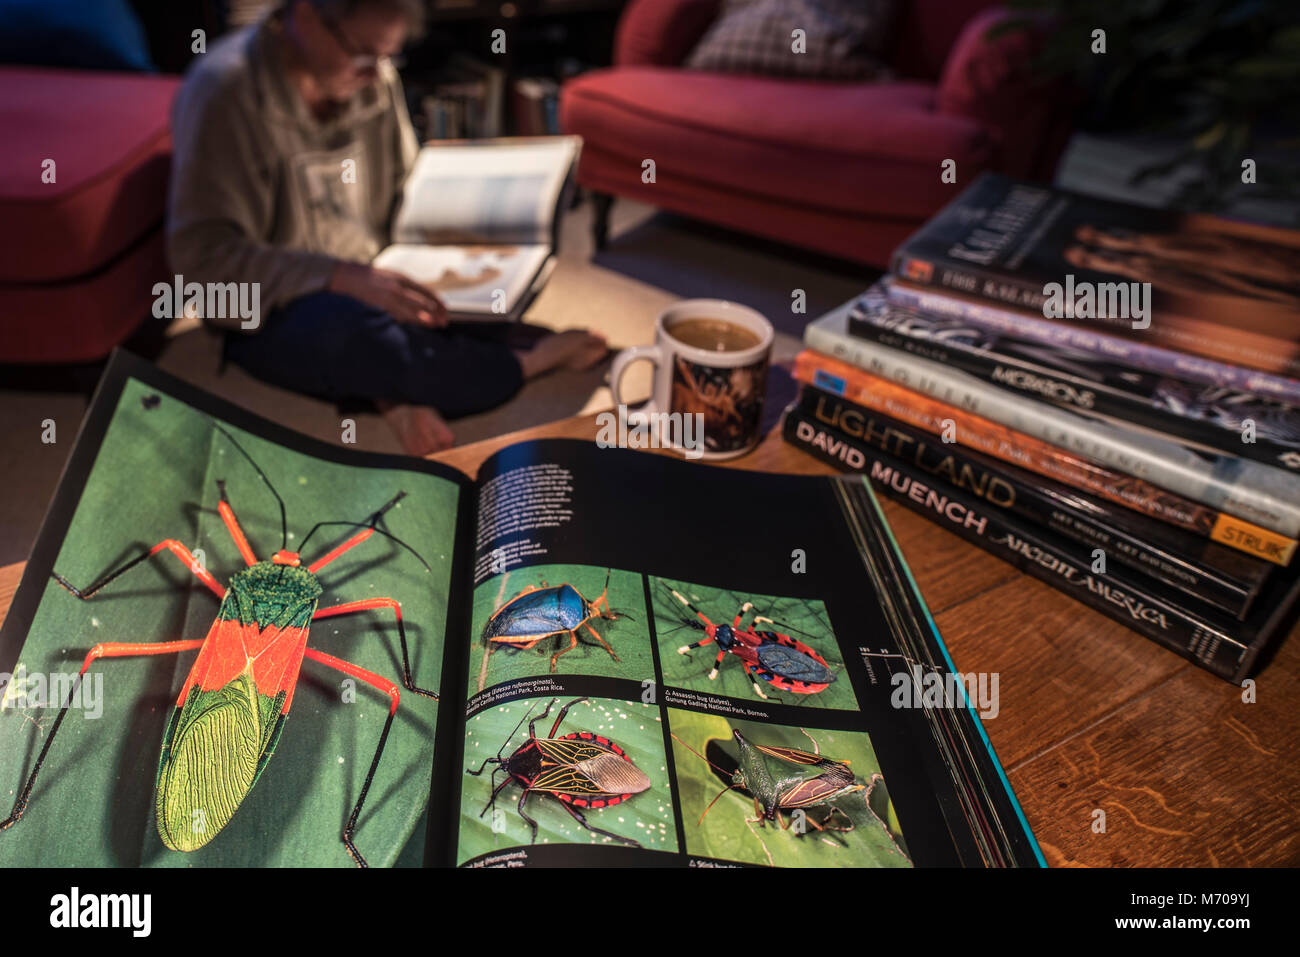 Sachbuch hardcover Bildband über Wildlife Fotografie übersicht Tiere im Wohnzimmer zu Hause öffnen Stockfoto